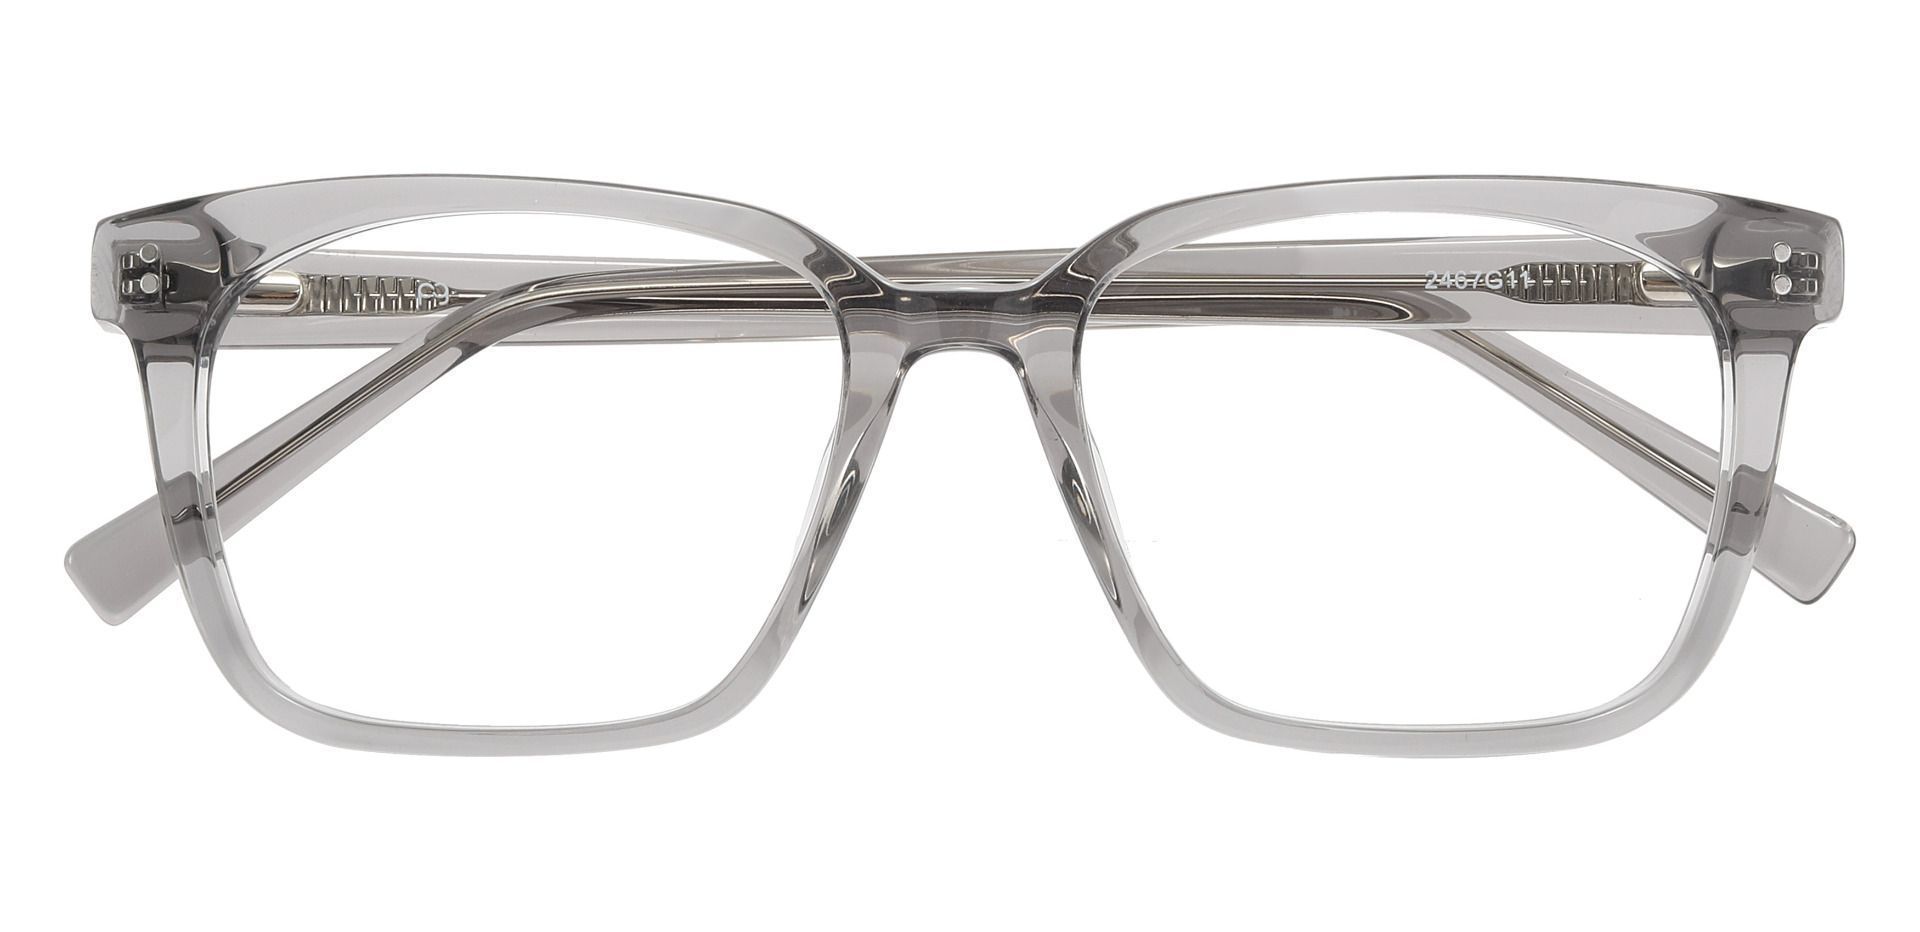 Apex Rectangle Prescription Glasses - Gray